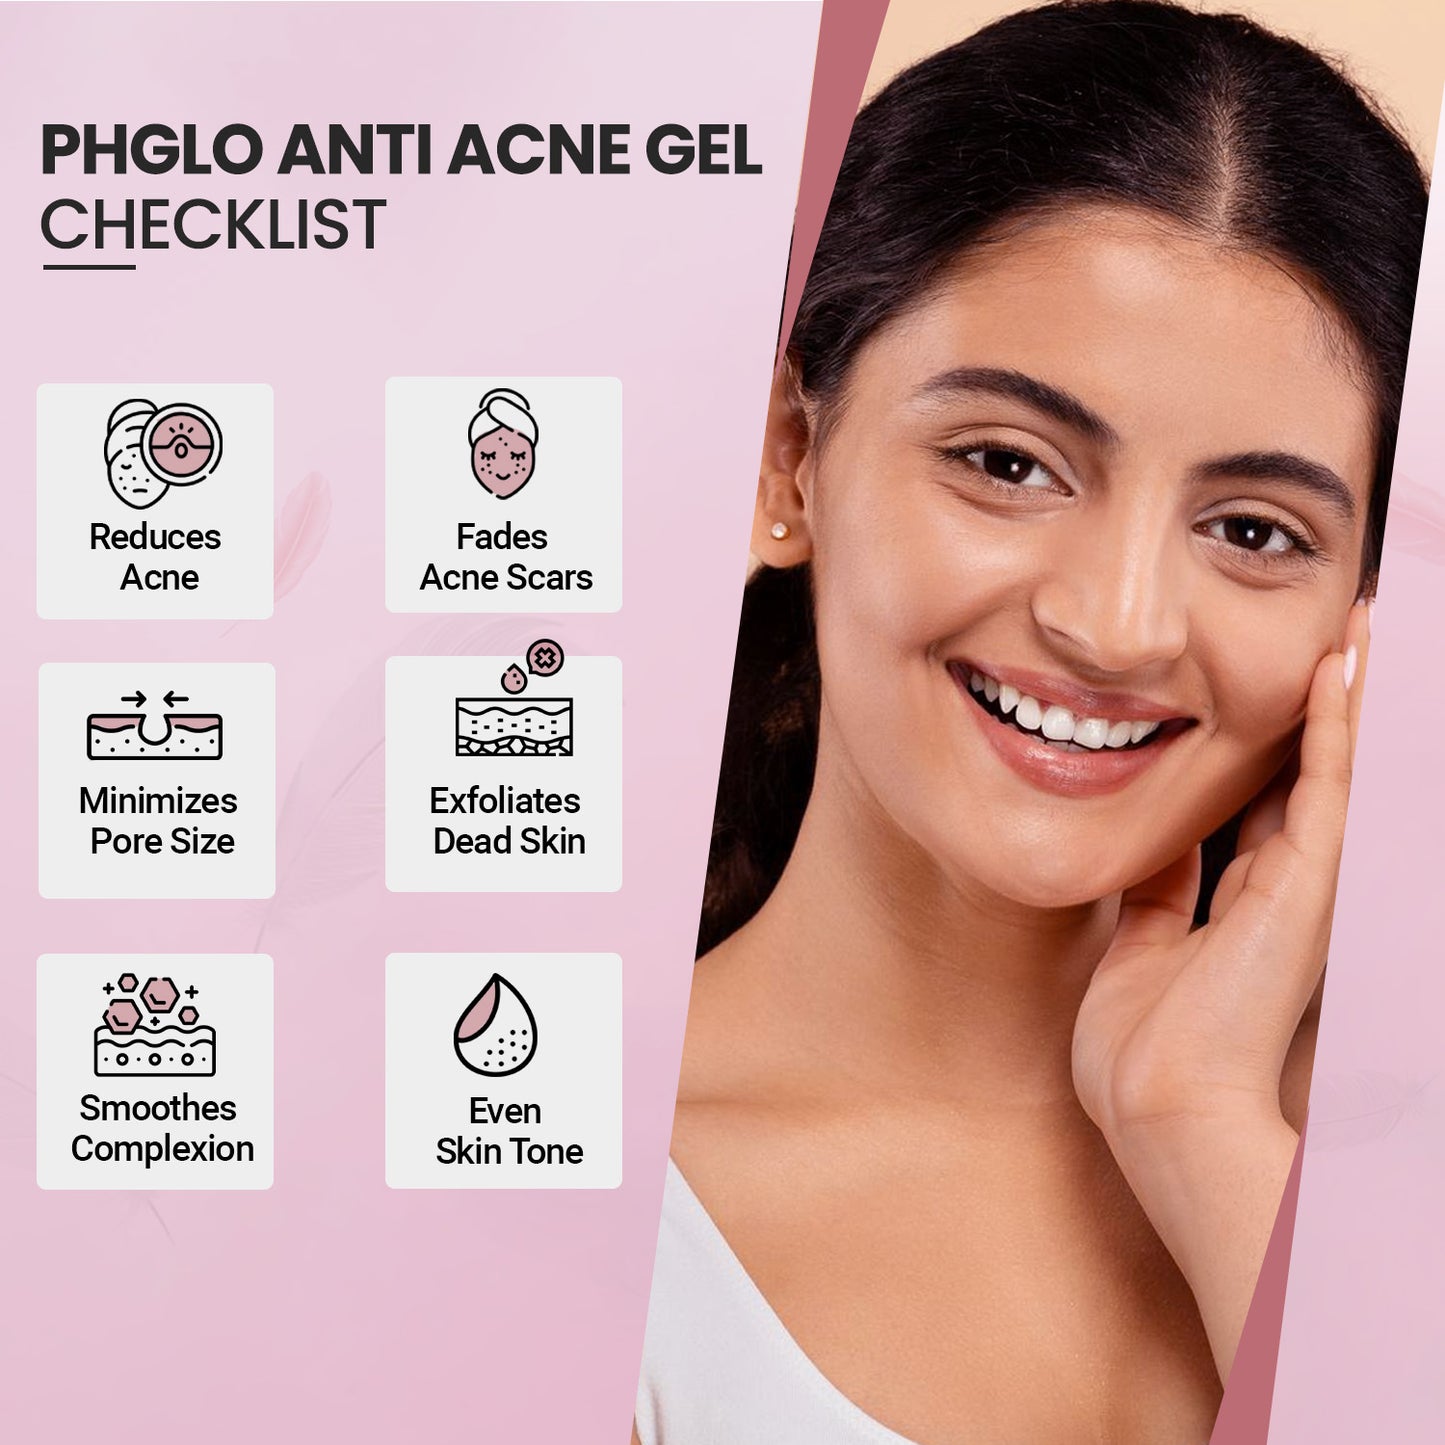 Phglo Anti Acne Gel